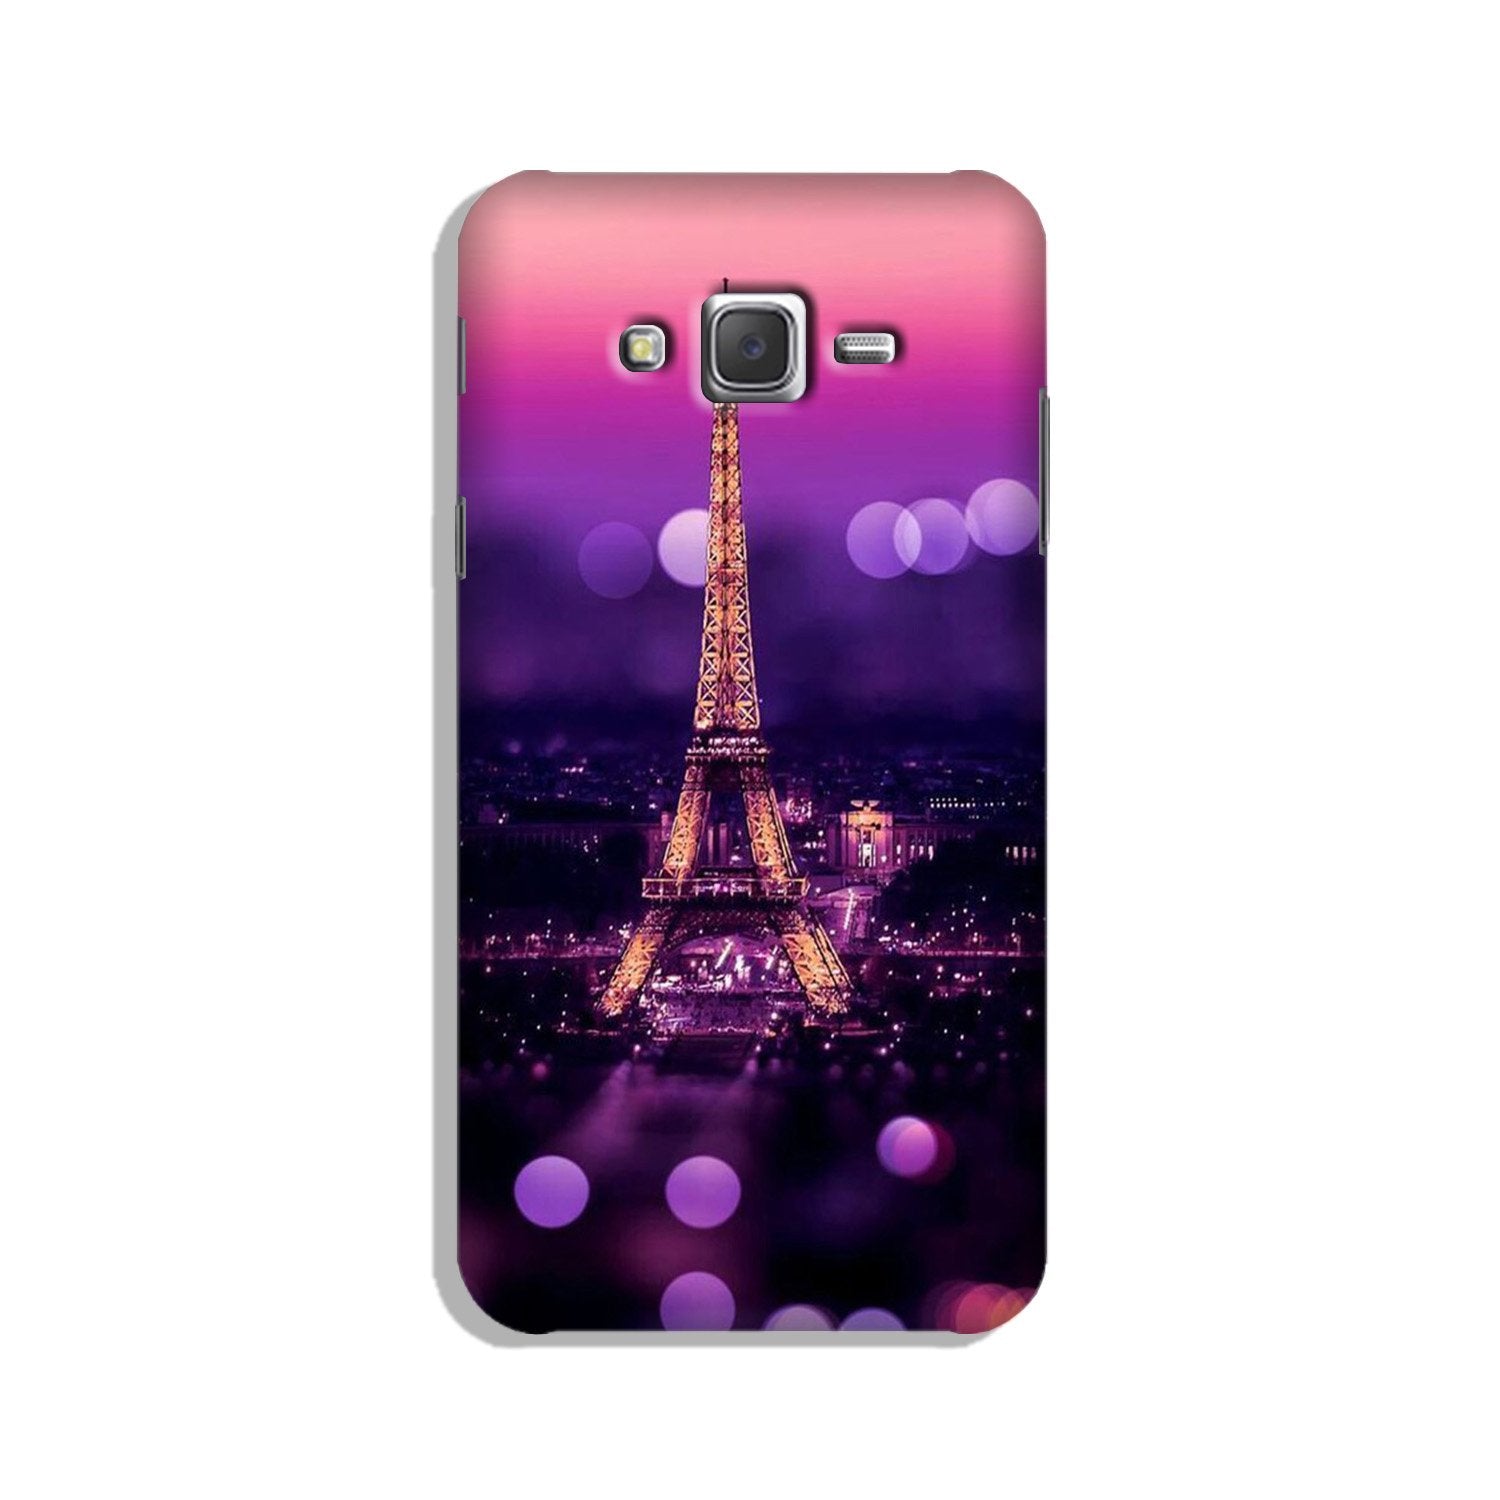 Eiffel Tower Case for Galaxy J2 (2015)